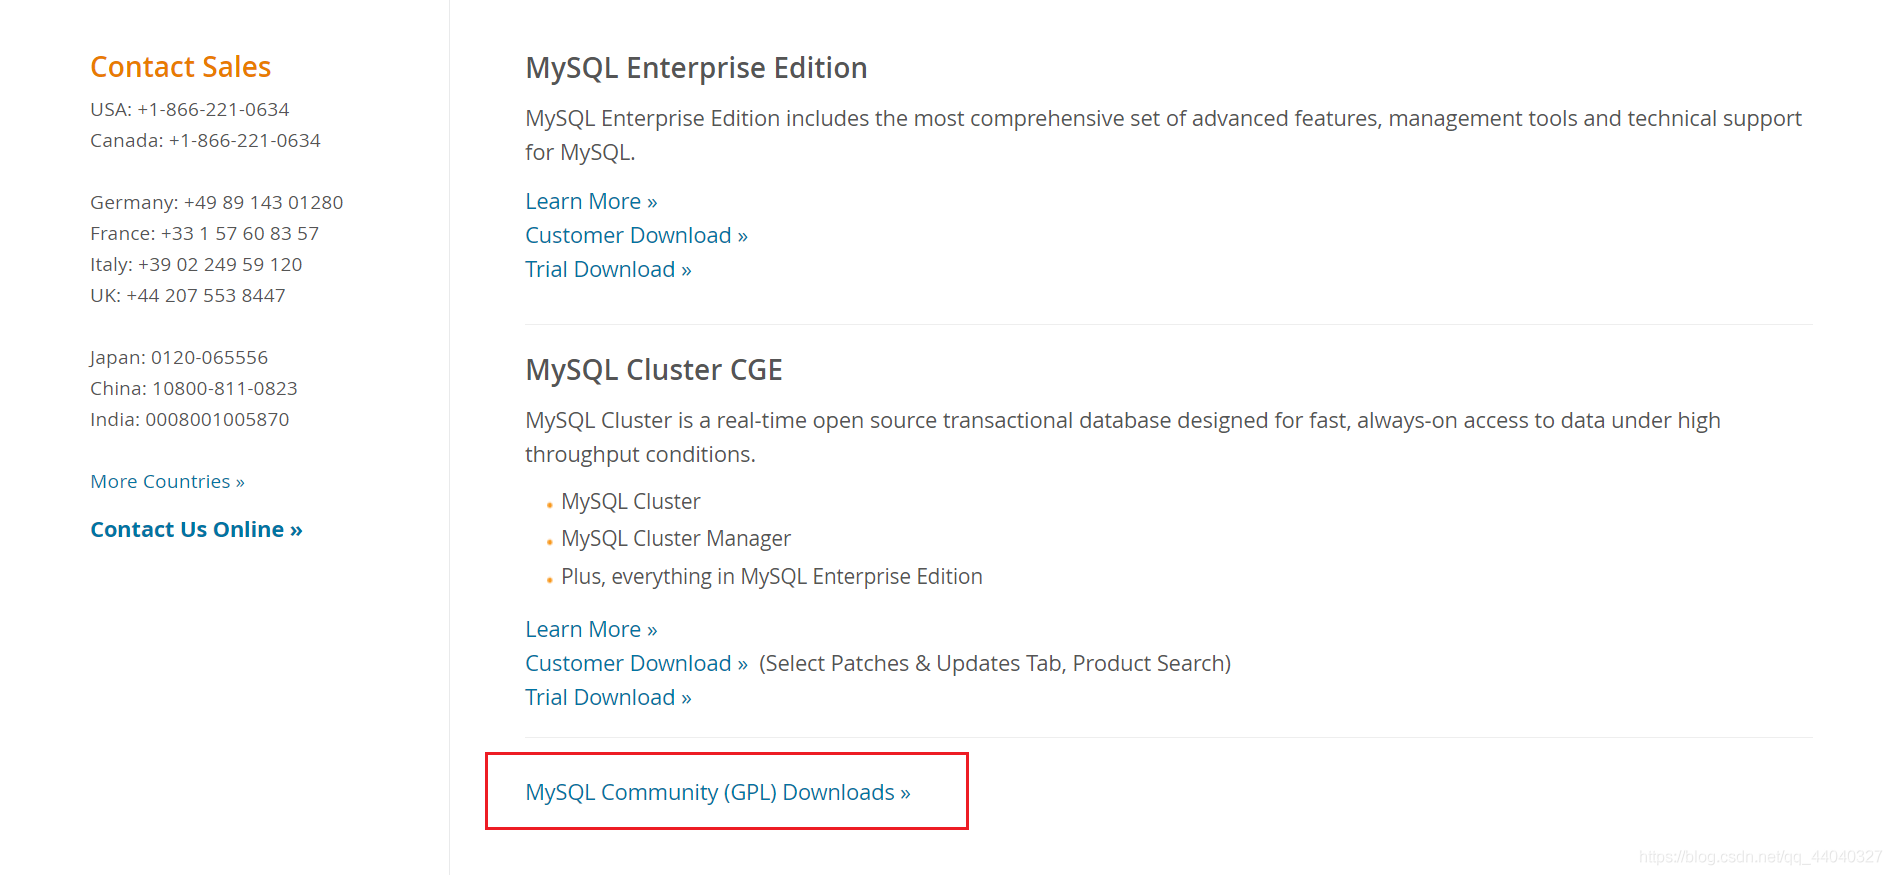 最新版MySQL 8.0.22下载安装超详细教程(Windows 64位)